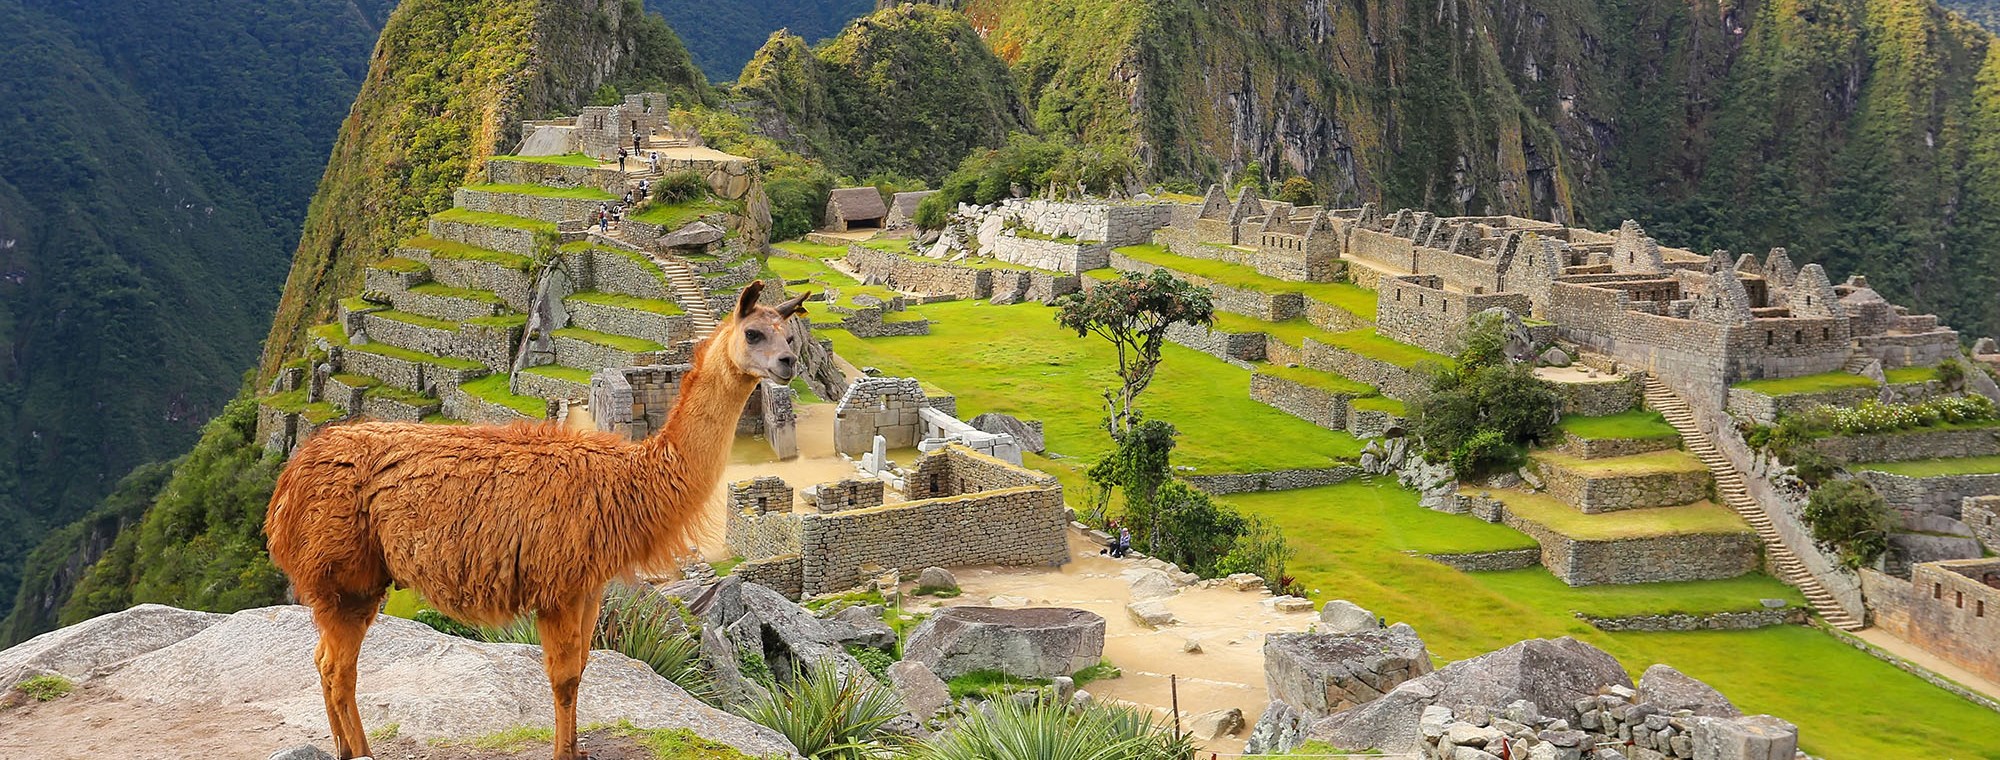 Machu Picchu with llama in foreground, Peru